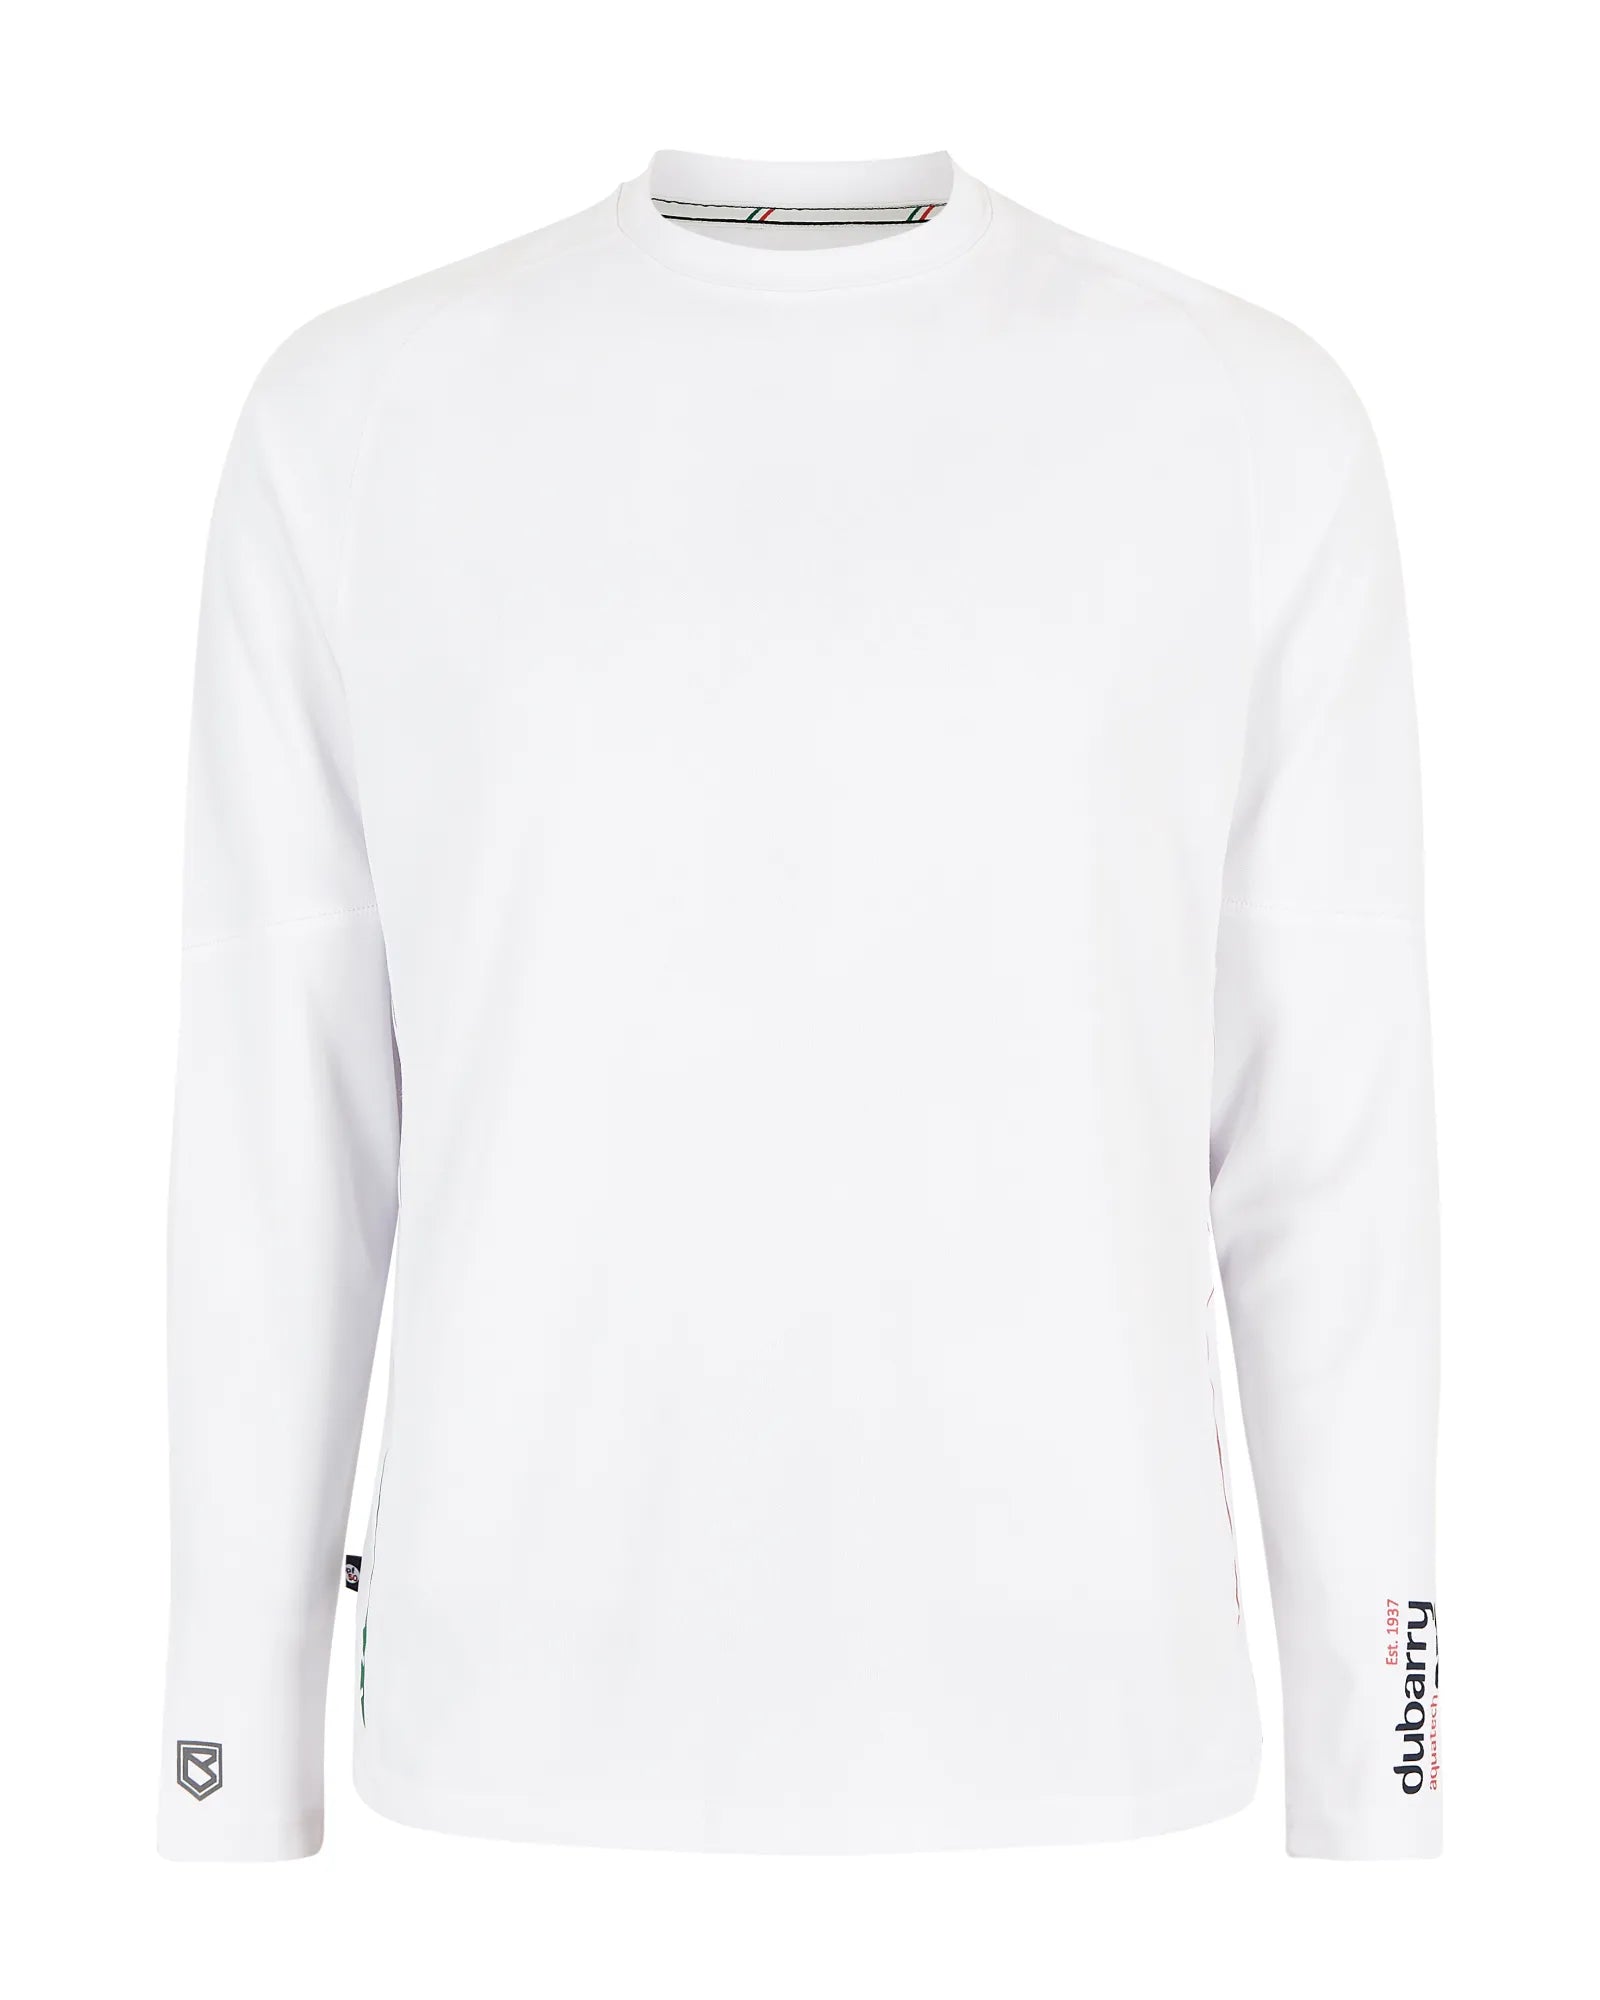 Ancona T-shirt - White